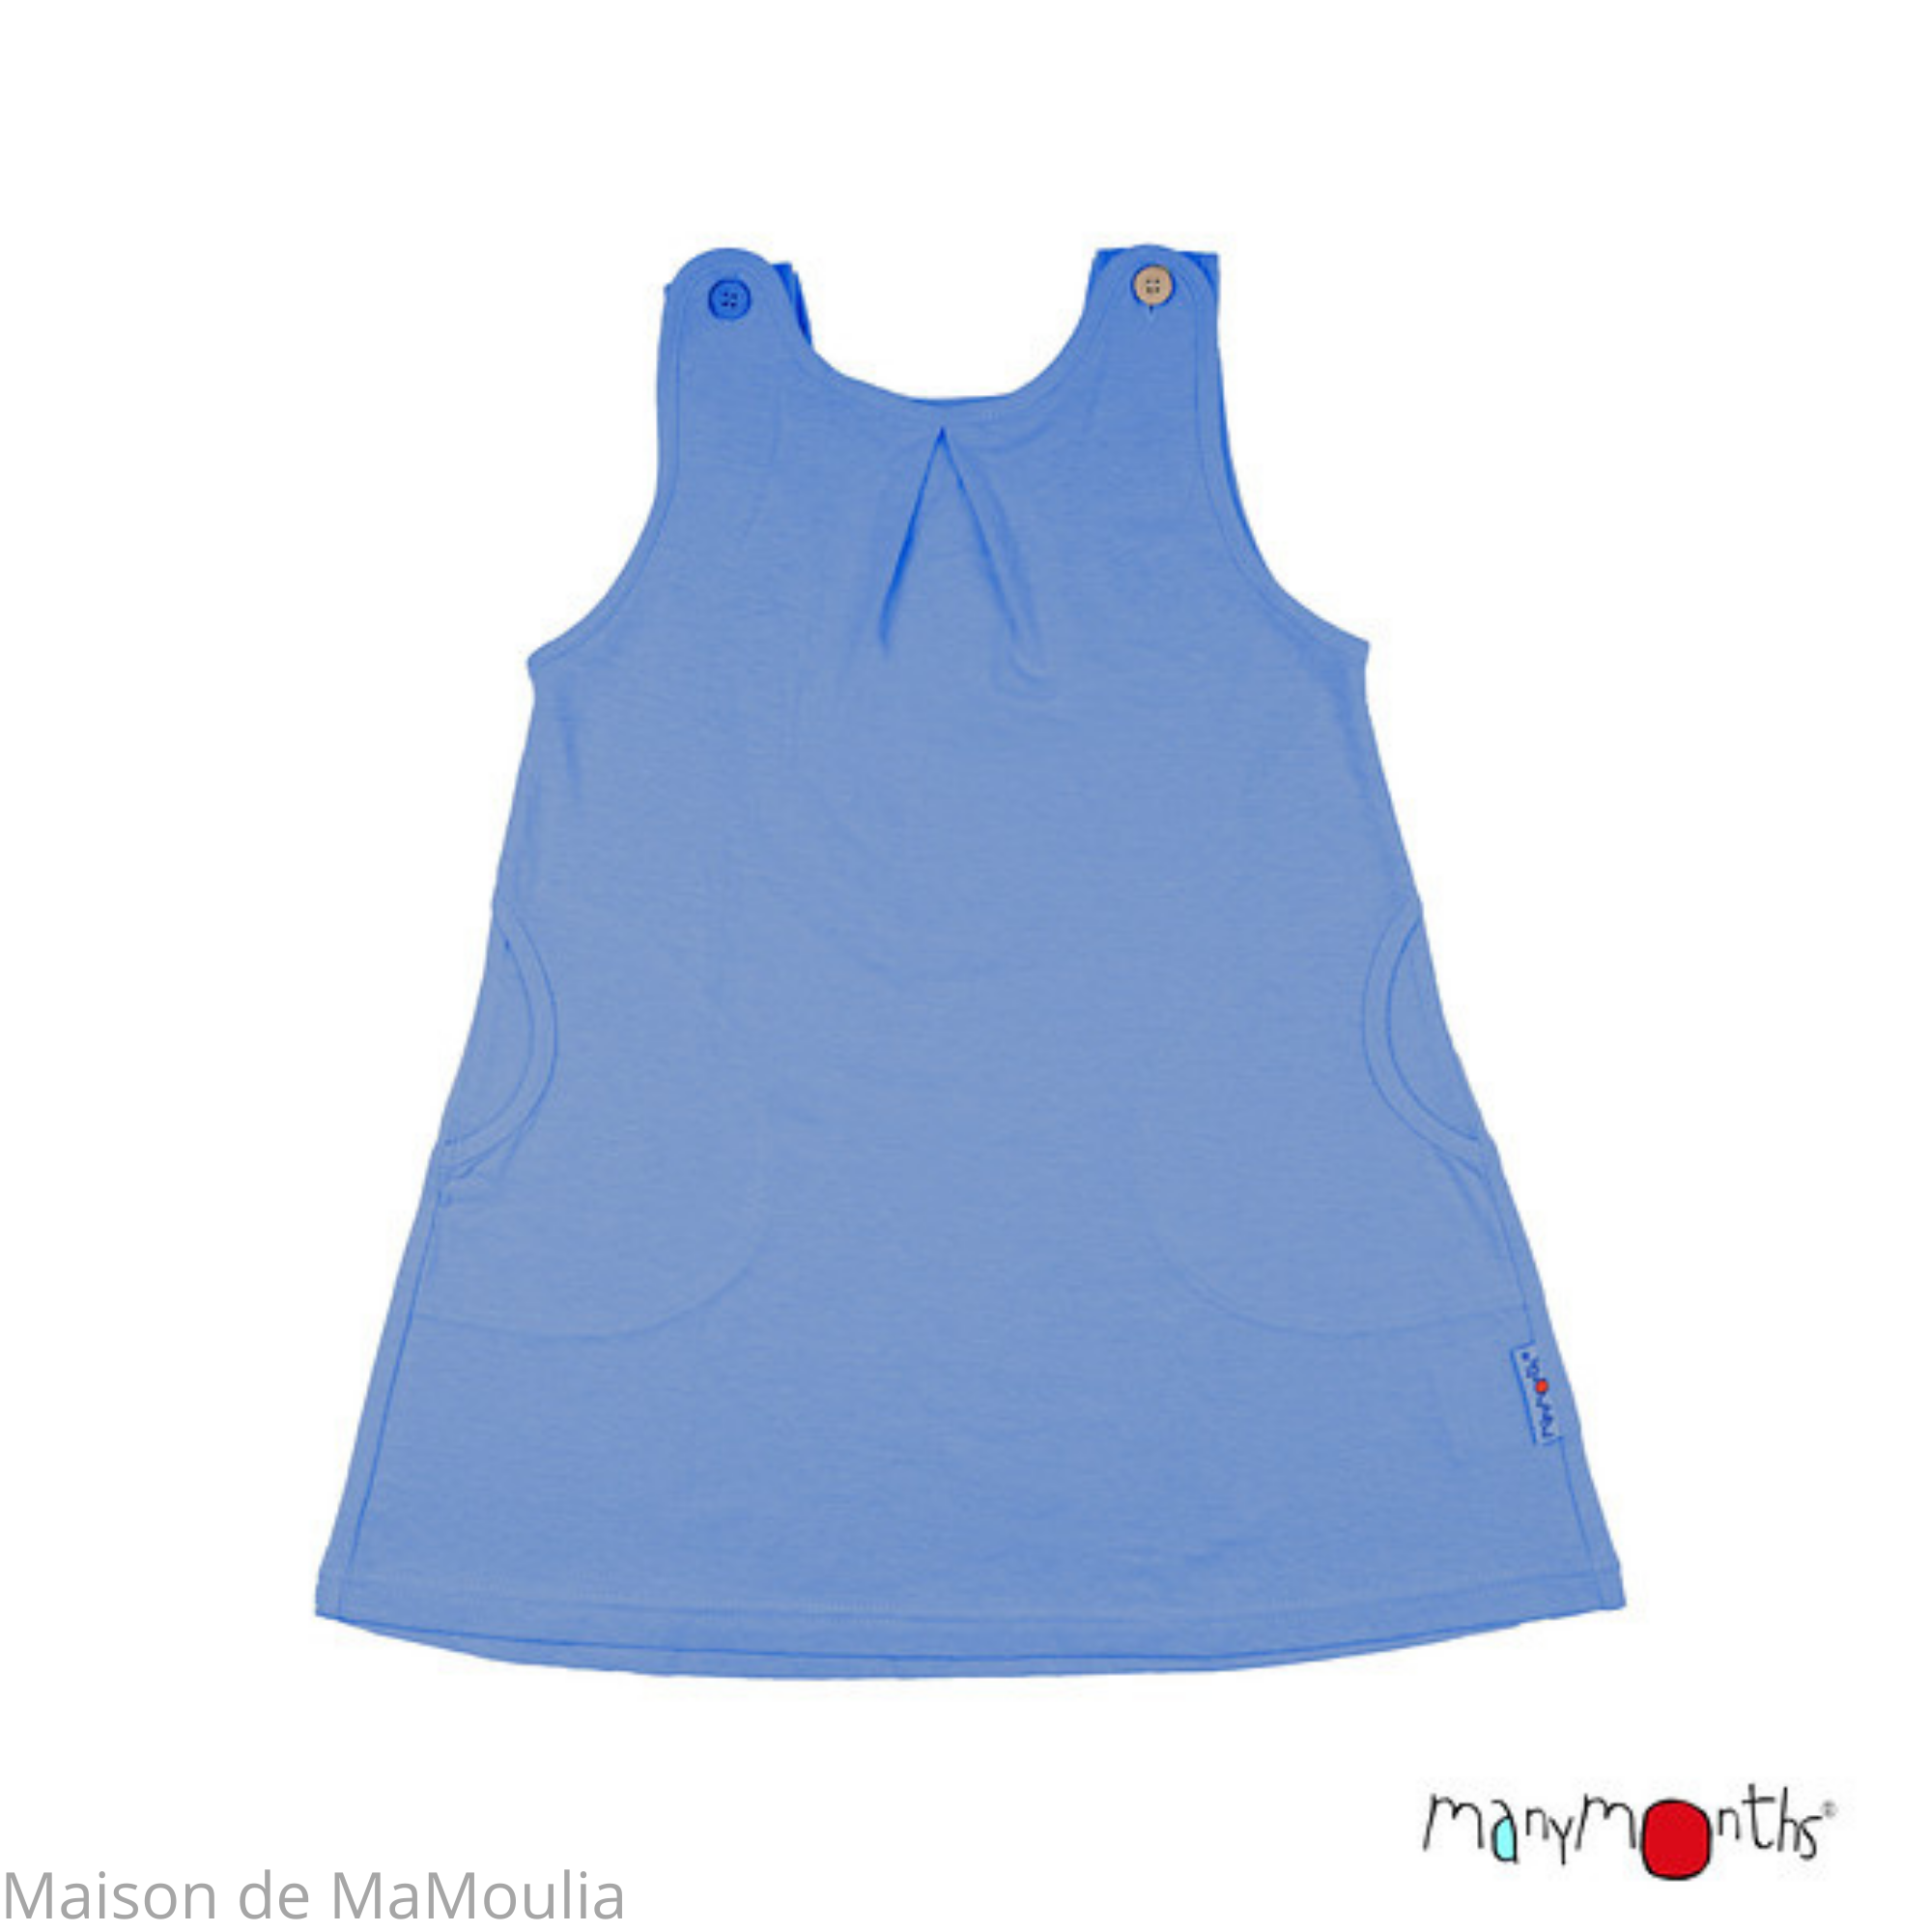 MANYMONTHS Eco - Robe-tunique ajustable - Coton bio/Chanvre -Bleu